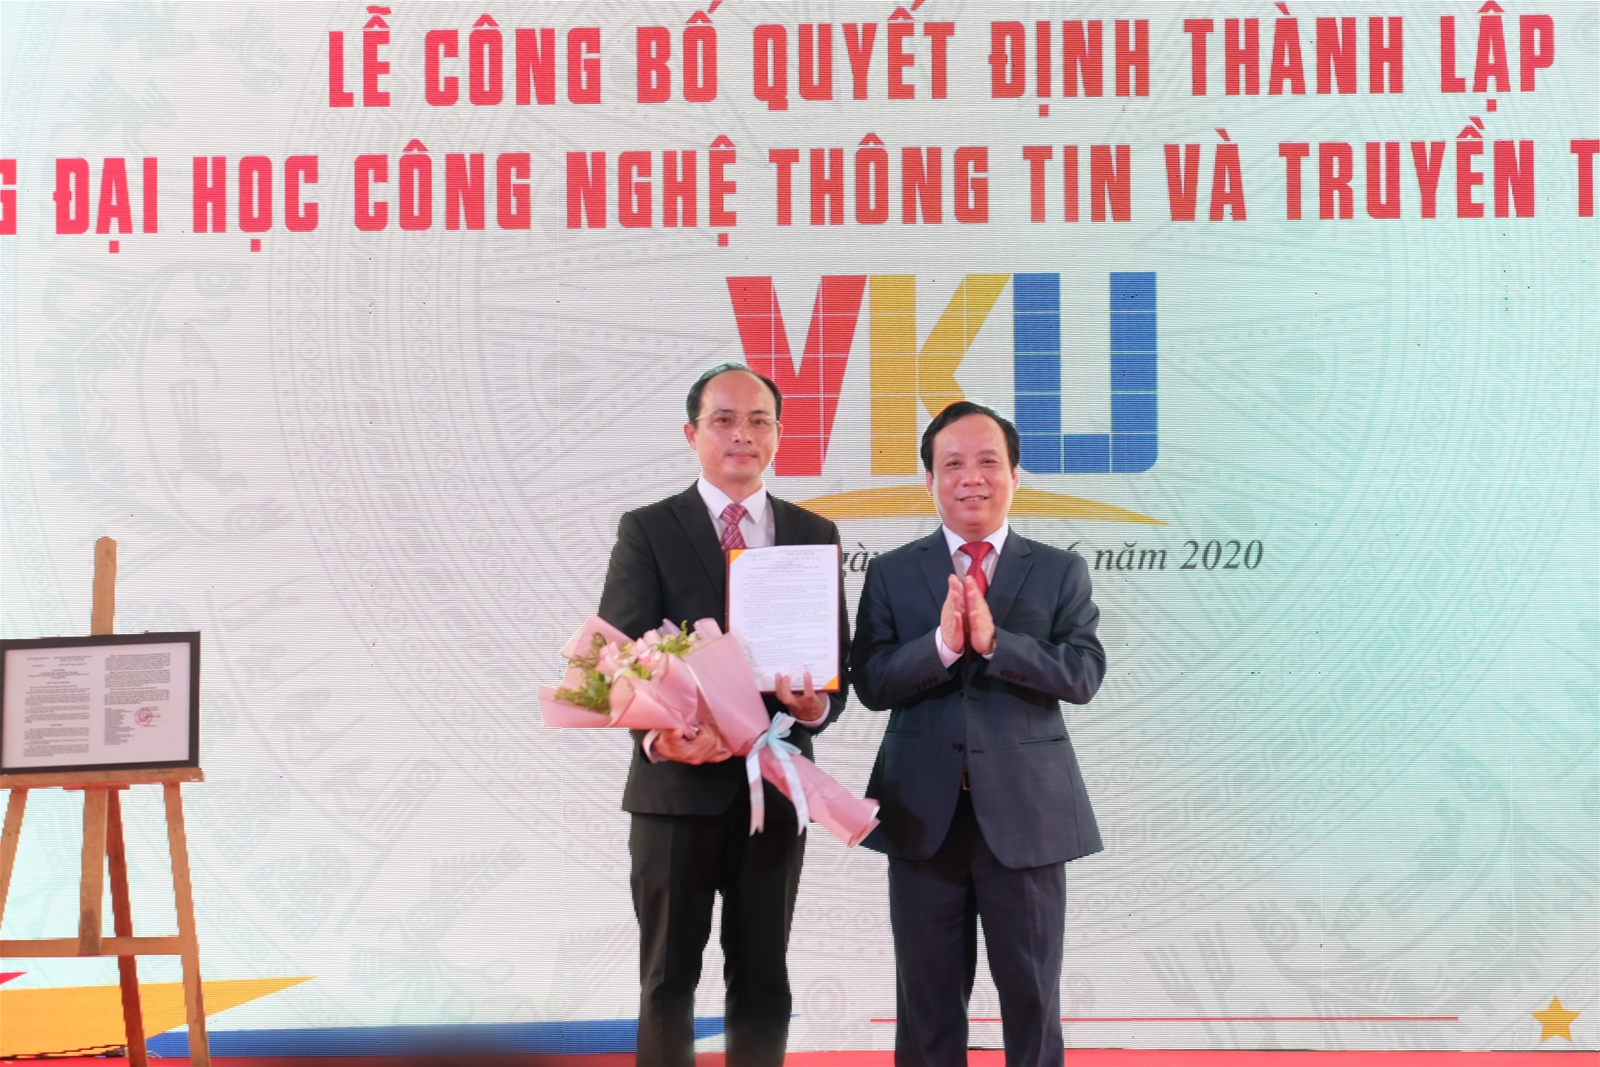 Đà Nẵng: Thành lập Trường ĐH CNTT và Truyền thông Việt - Hàn - Ảnh minh hoạ 4